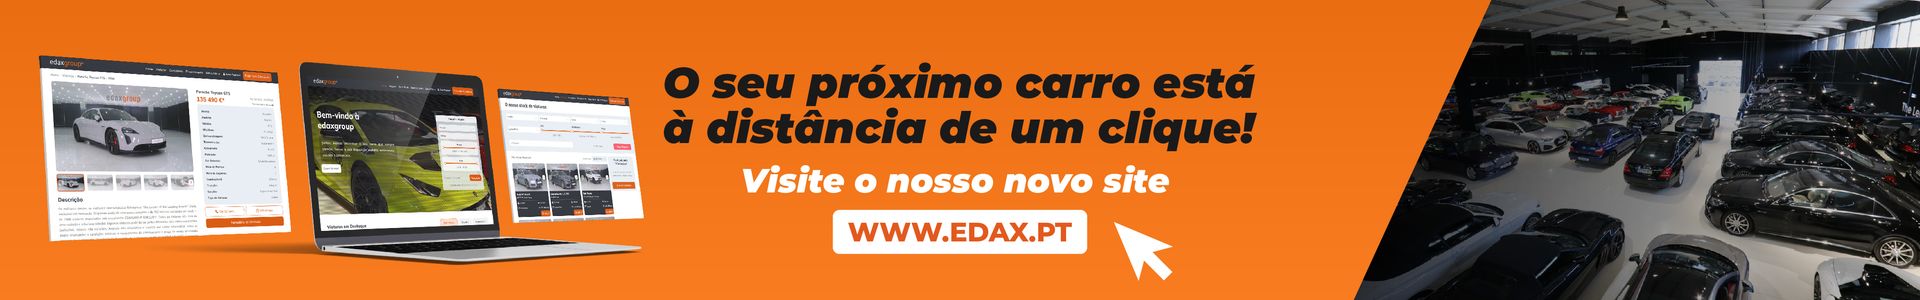 Entreposto Comercial Edaxgroup ® top banner